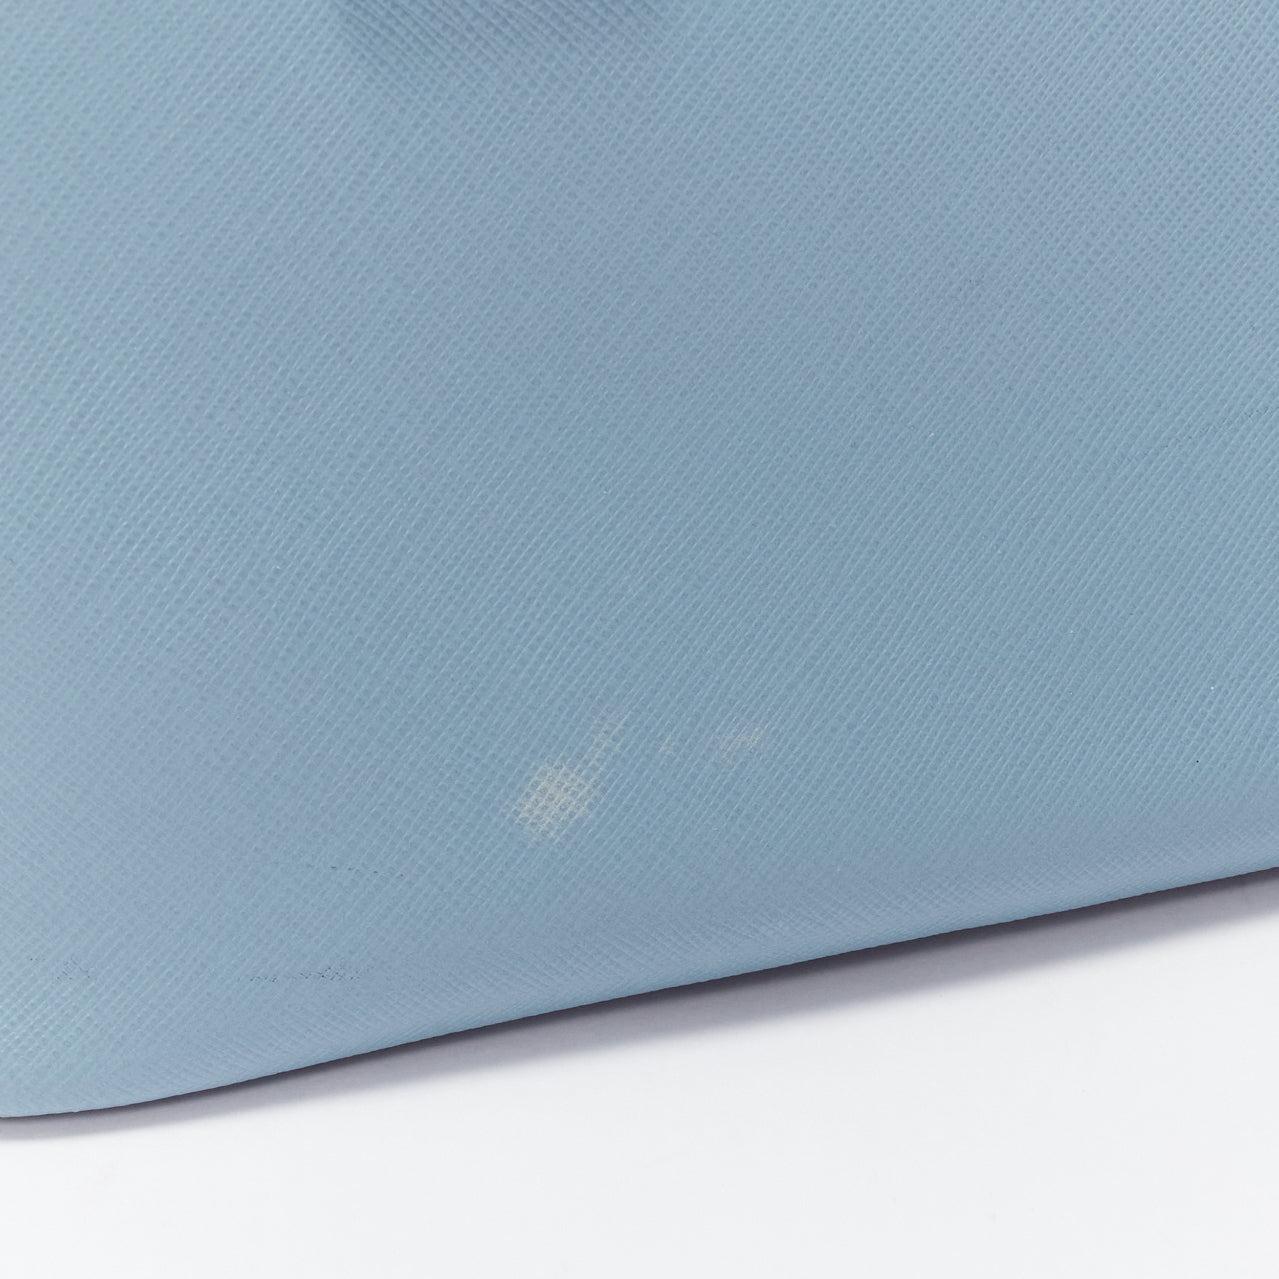 PRADA Galleria light blue saffiano leather triangle logo shoulder tote bag 4